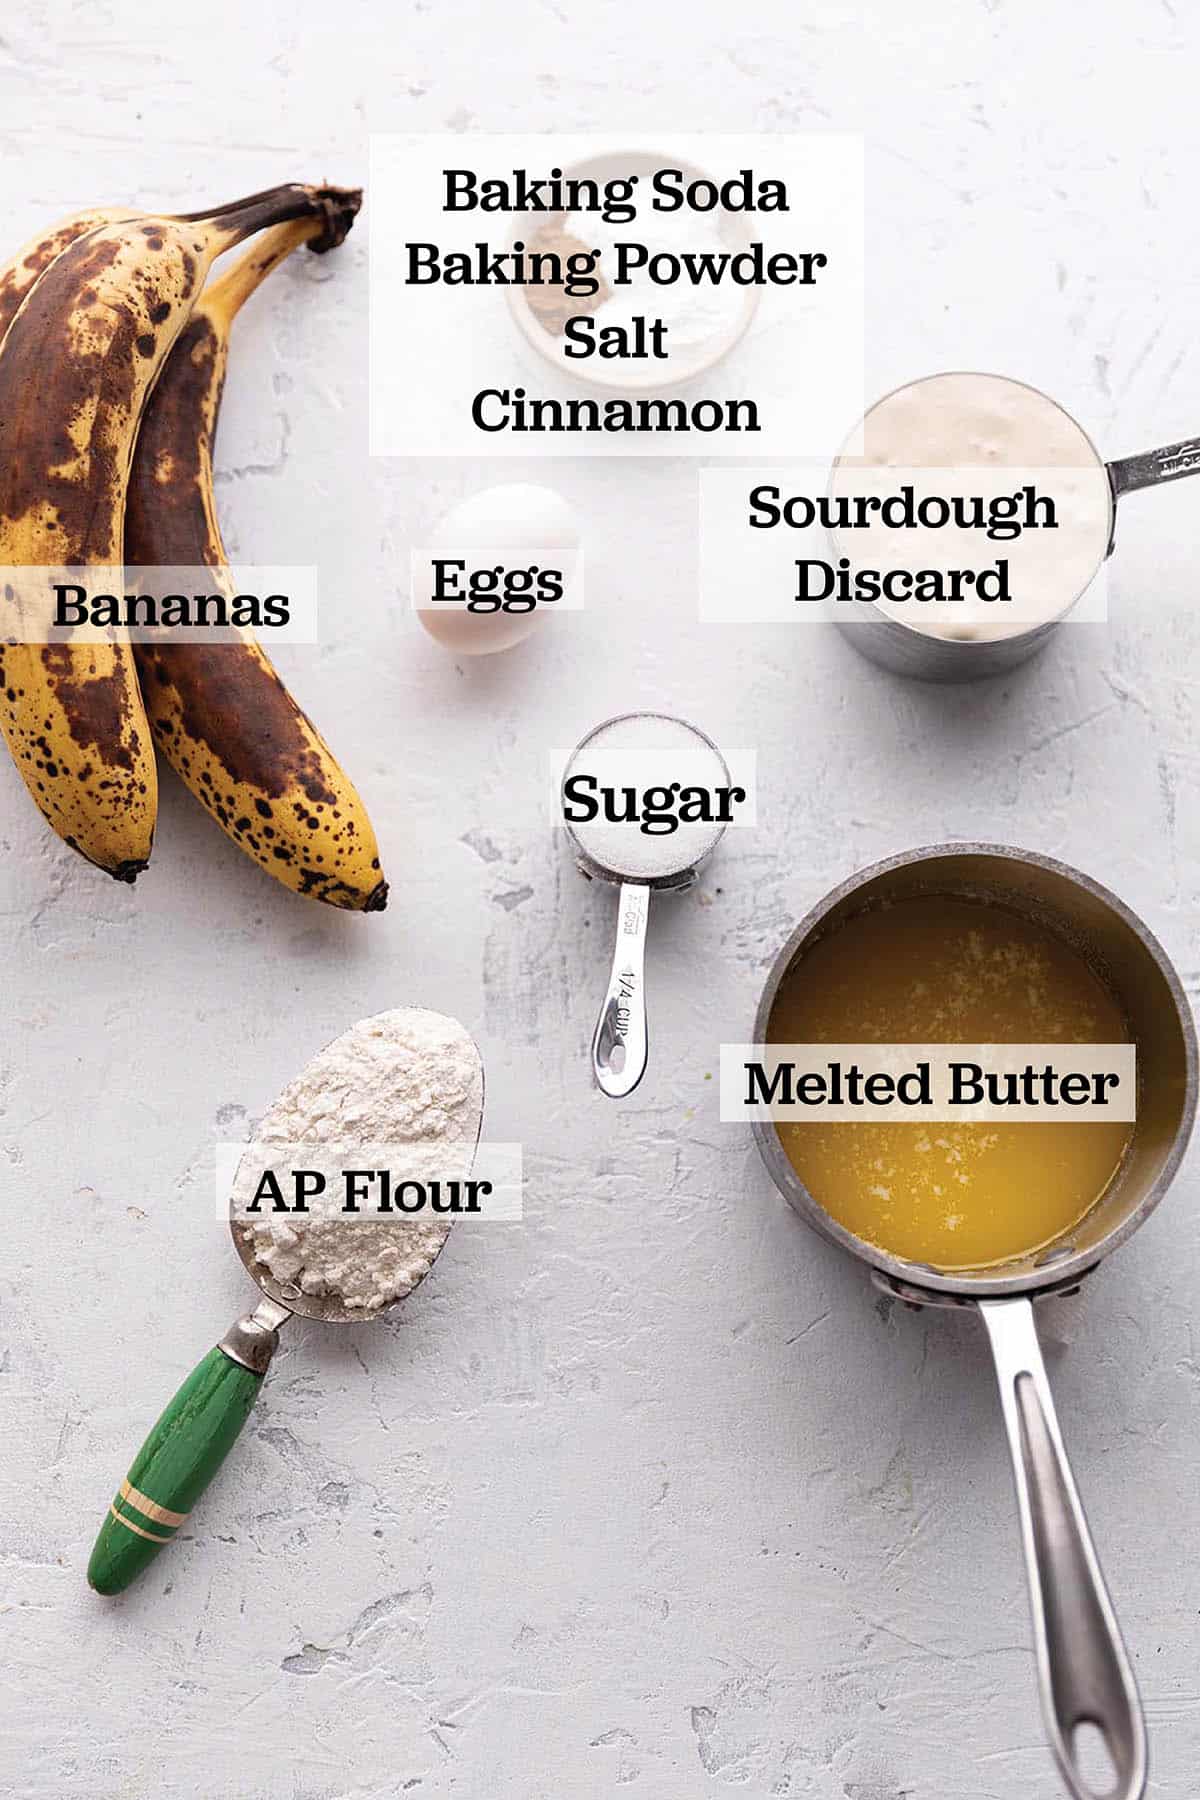 Bananas, flour, melted butter, sourdough discard, baking powder, baking soda salt and an egg.